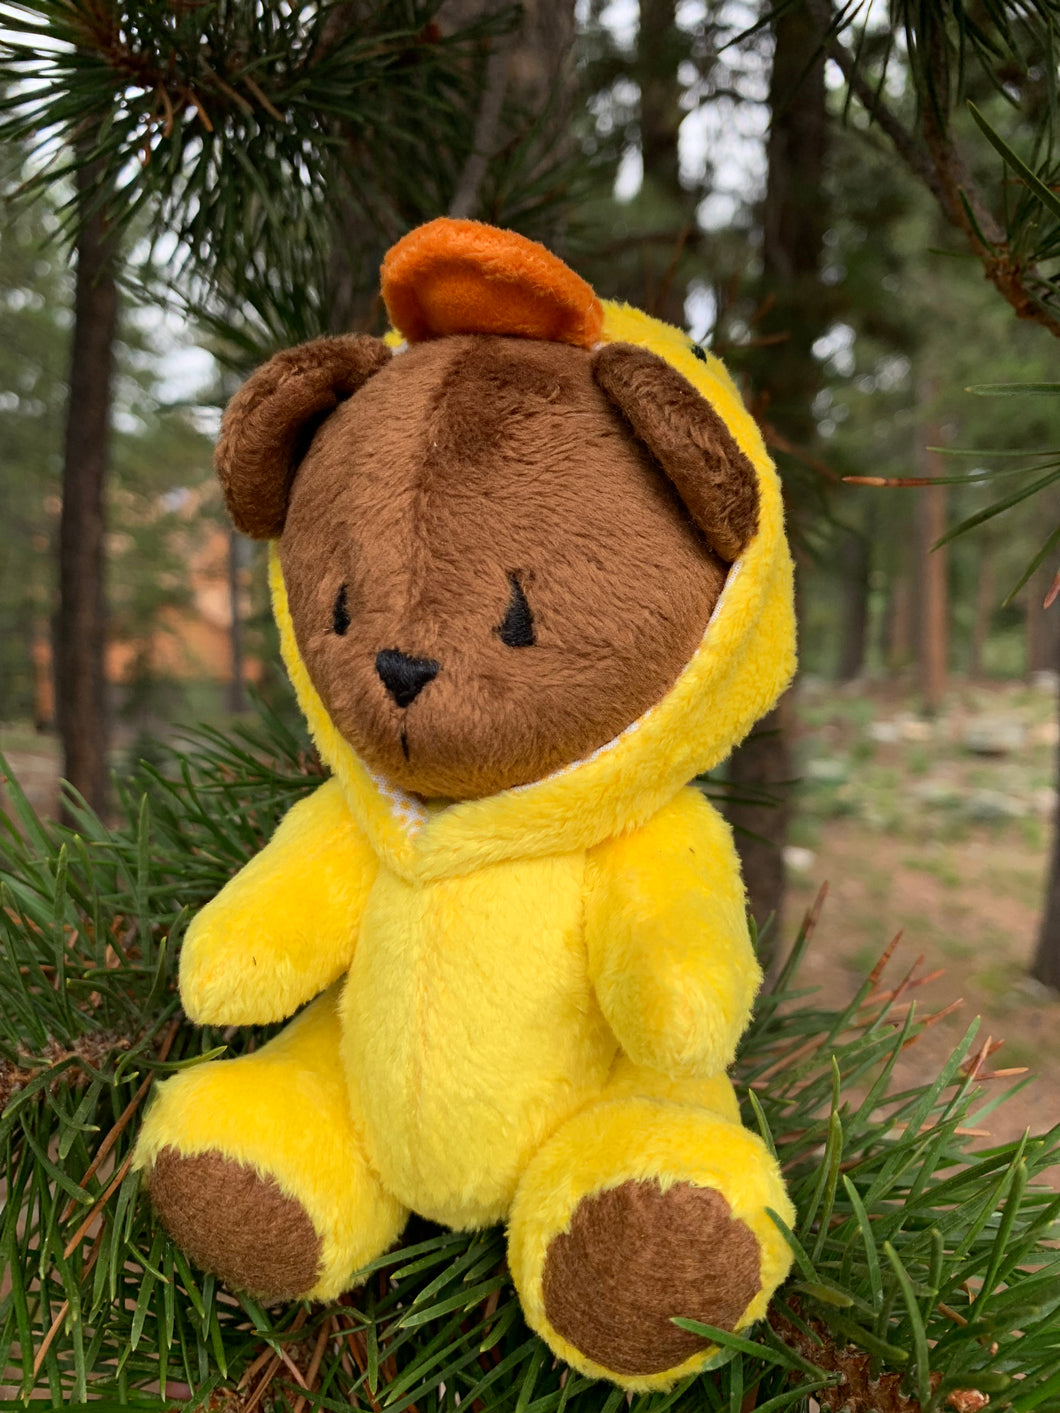 Teddy bear in duck costume